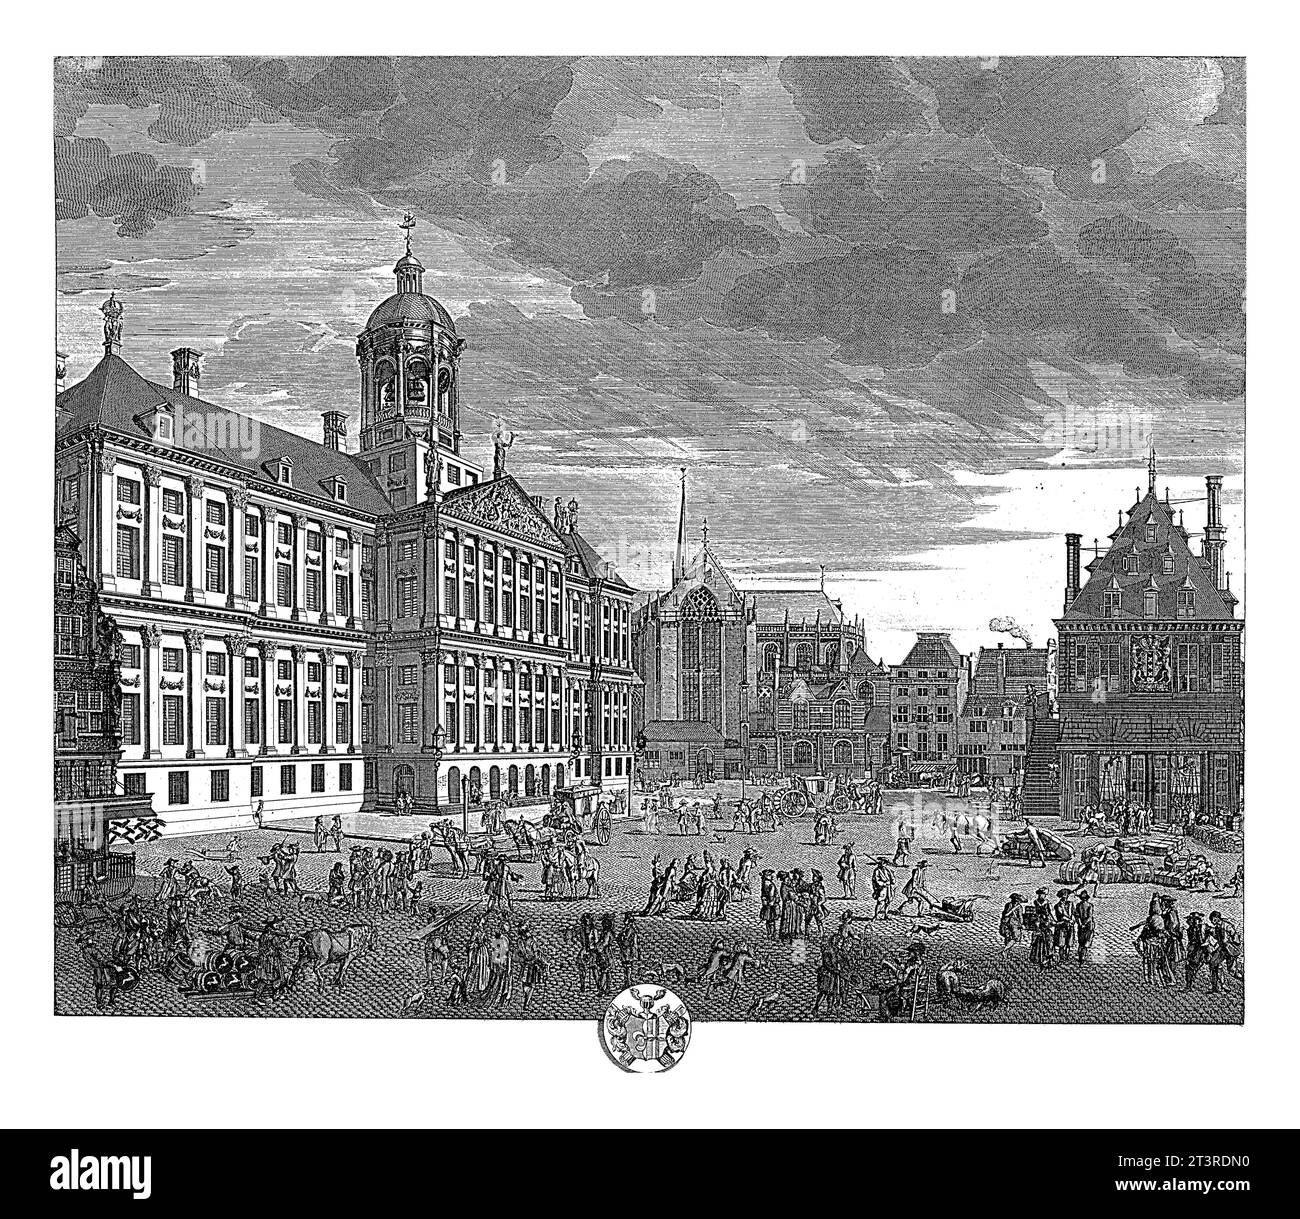 Blick auf das Rathaus auf dem Dam-Platz in Amsterdam, Pieter Schenk (I), 1675 - 1711 Blick auf das Rathaus auf dem Dam-Platz, die Waag und die Nieuwe Kerk in Stockfoto